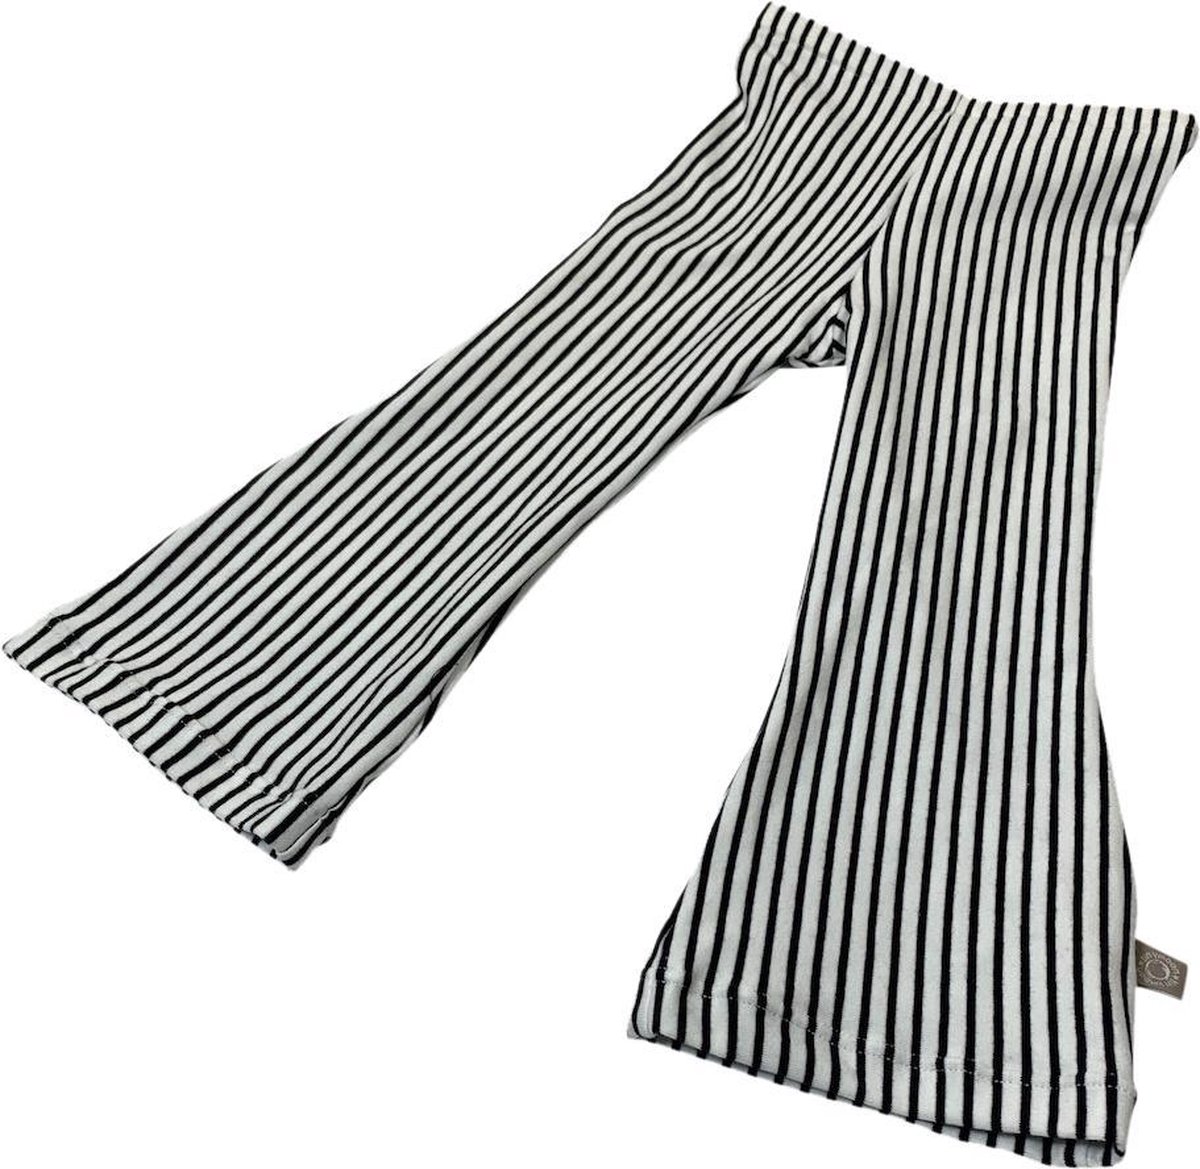 tinymoon Meisjes Broek Breton Stripes – model flared – Wit/Zwart – Maat 110/116